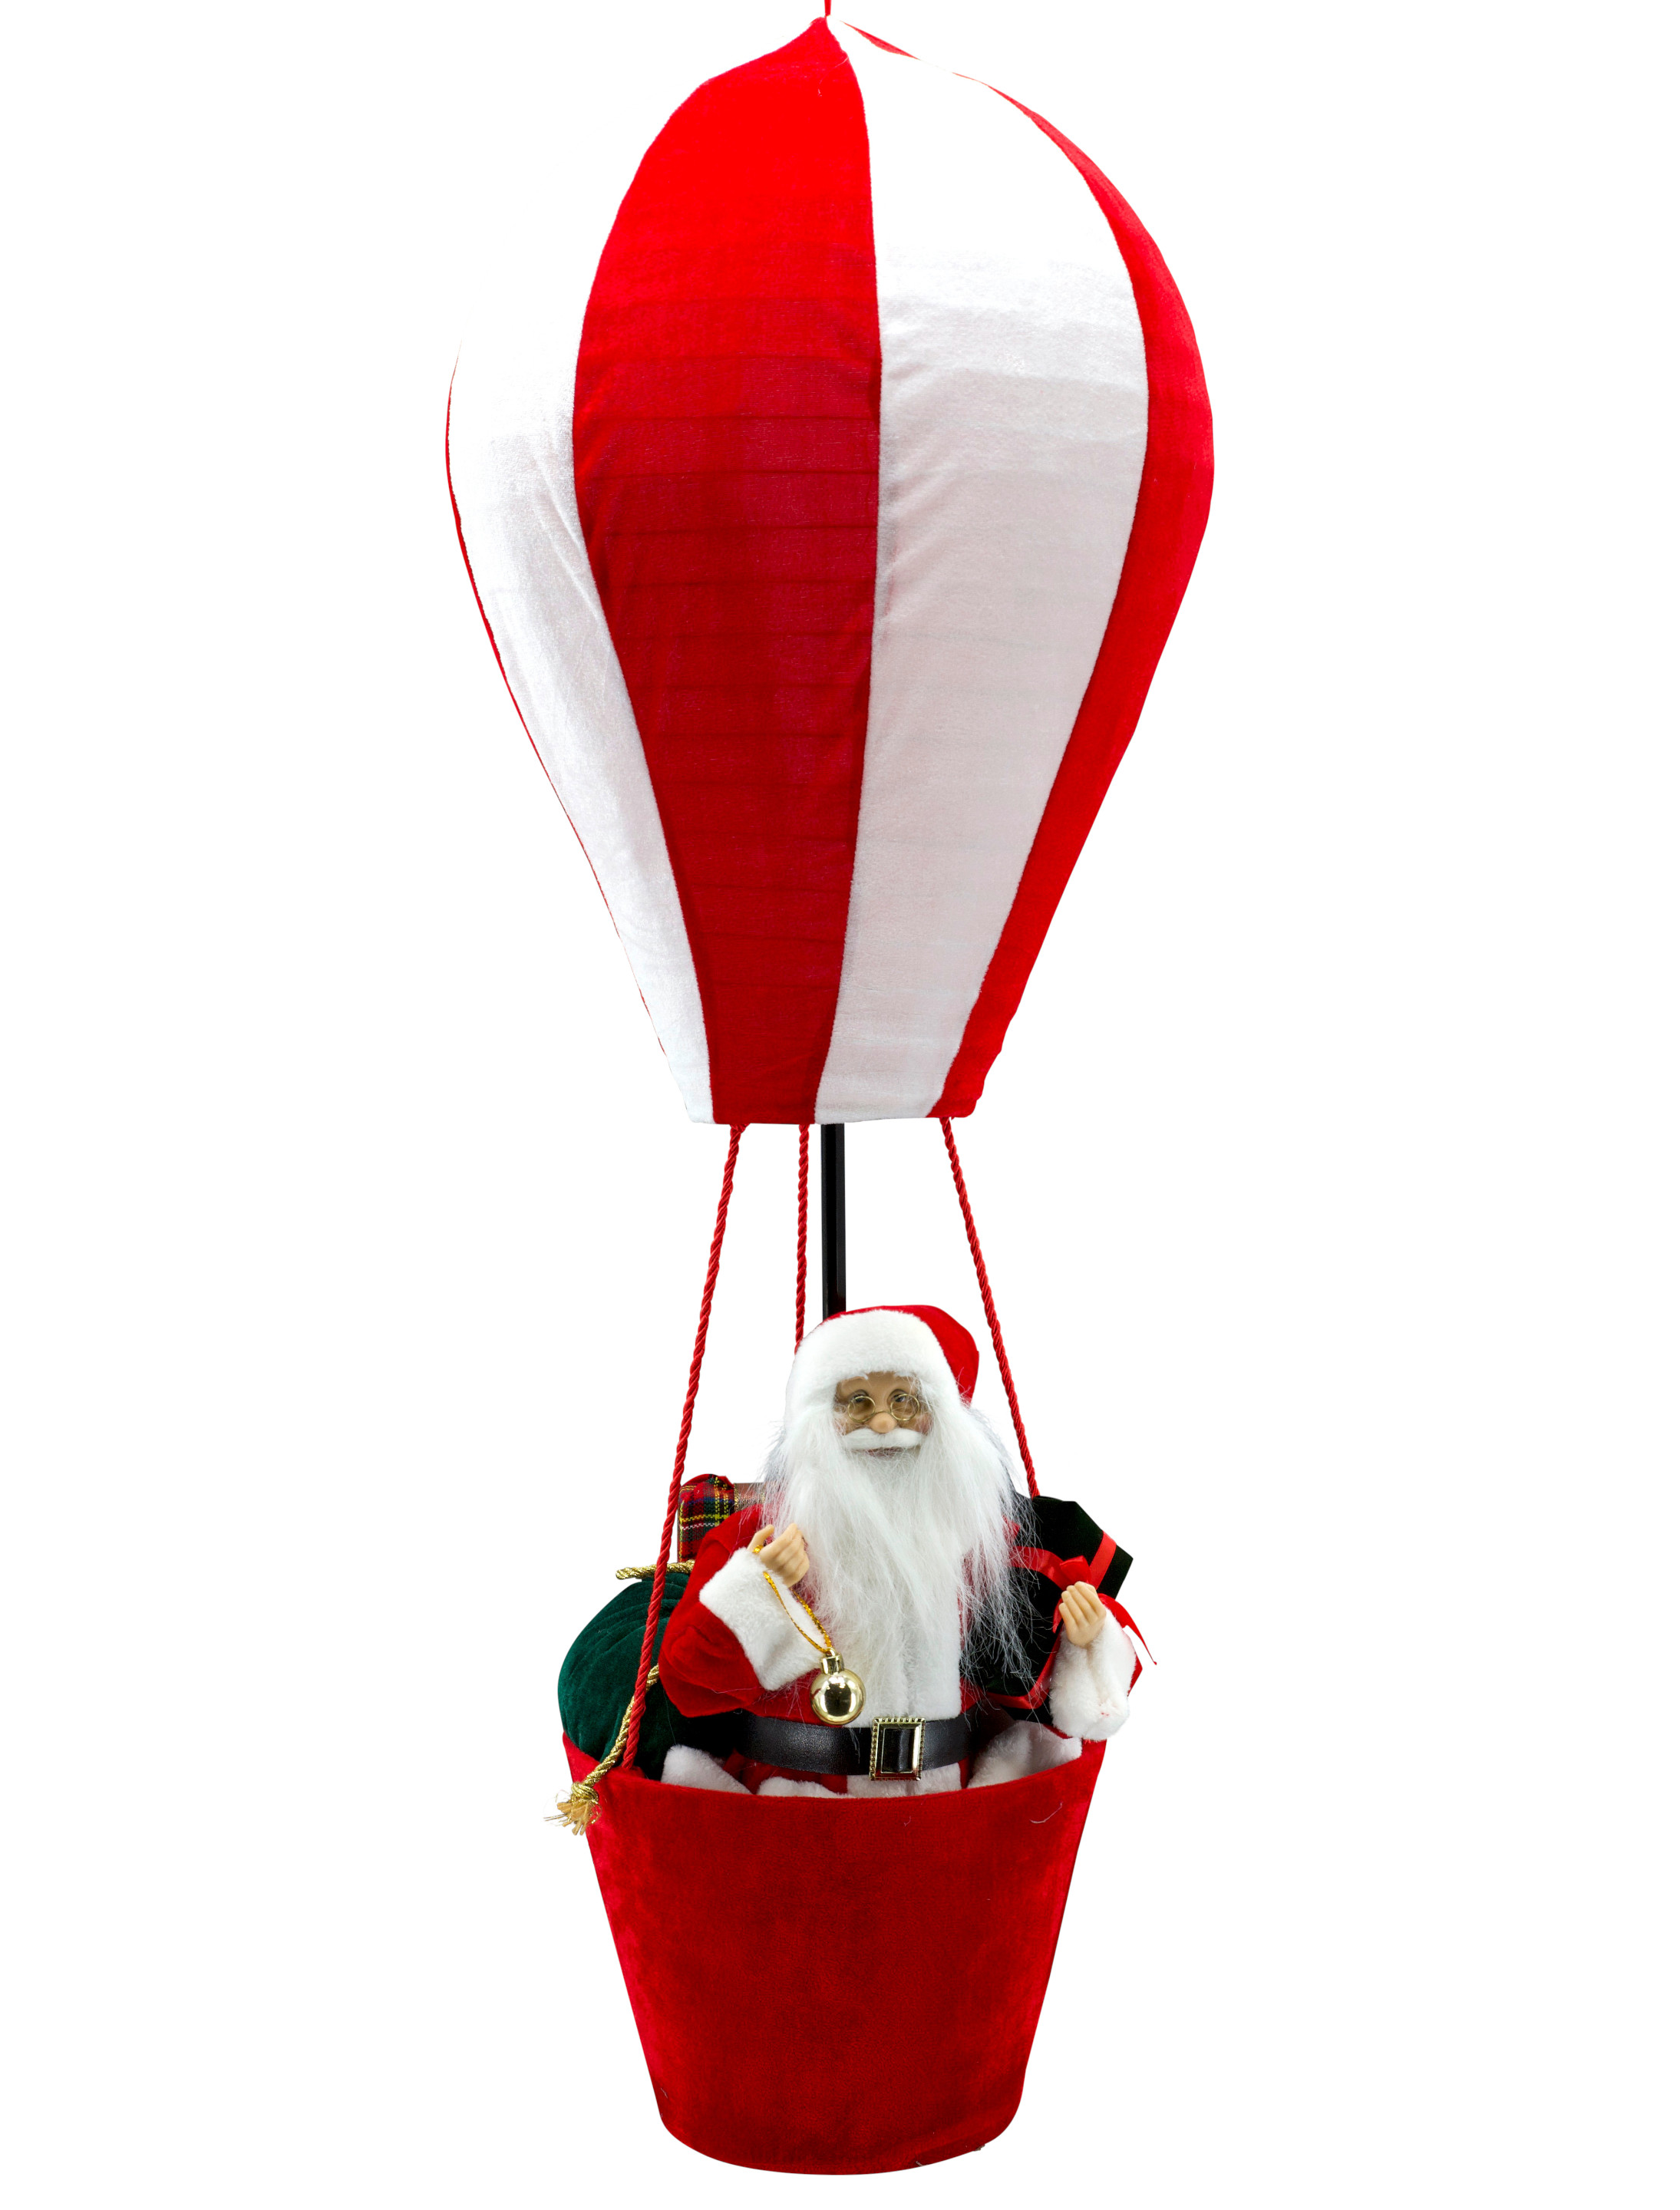 Weihnachtsmann im Heißluftballon